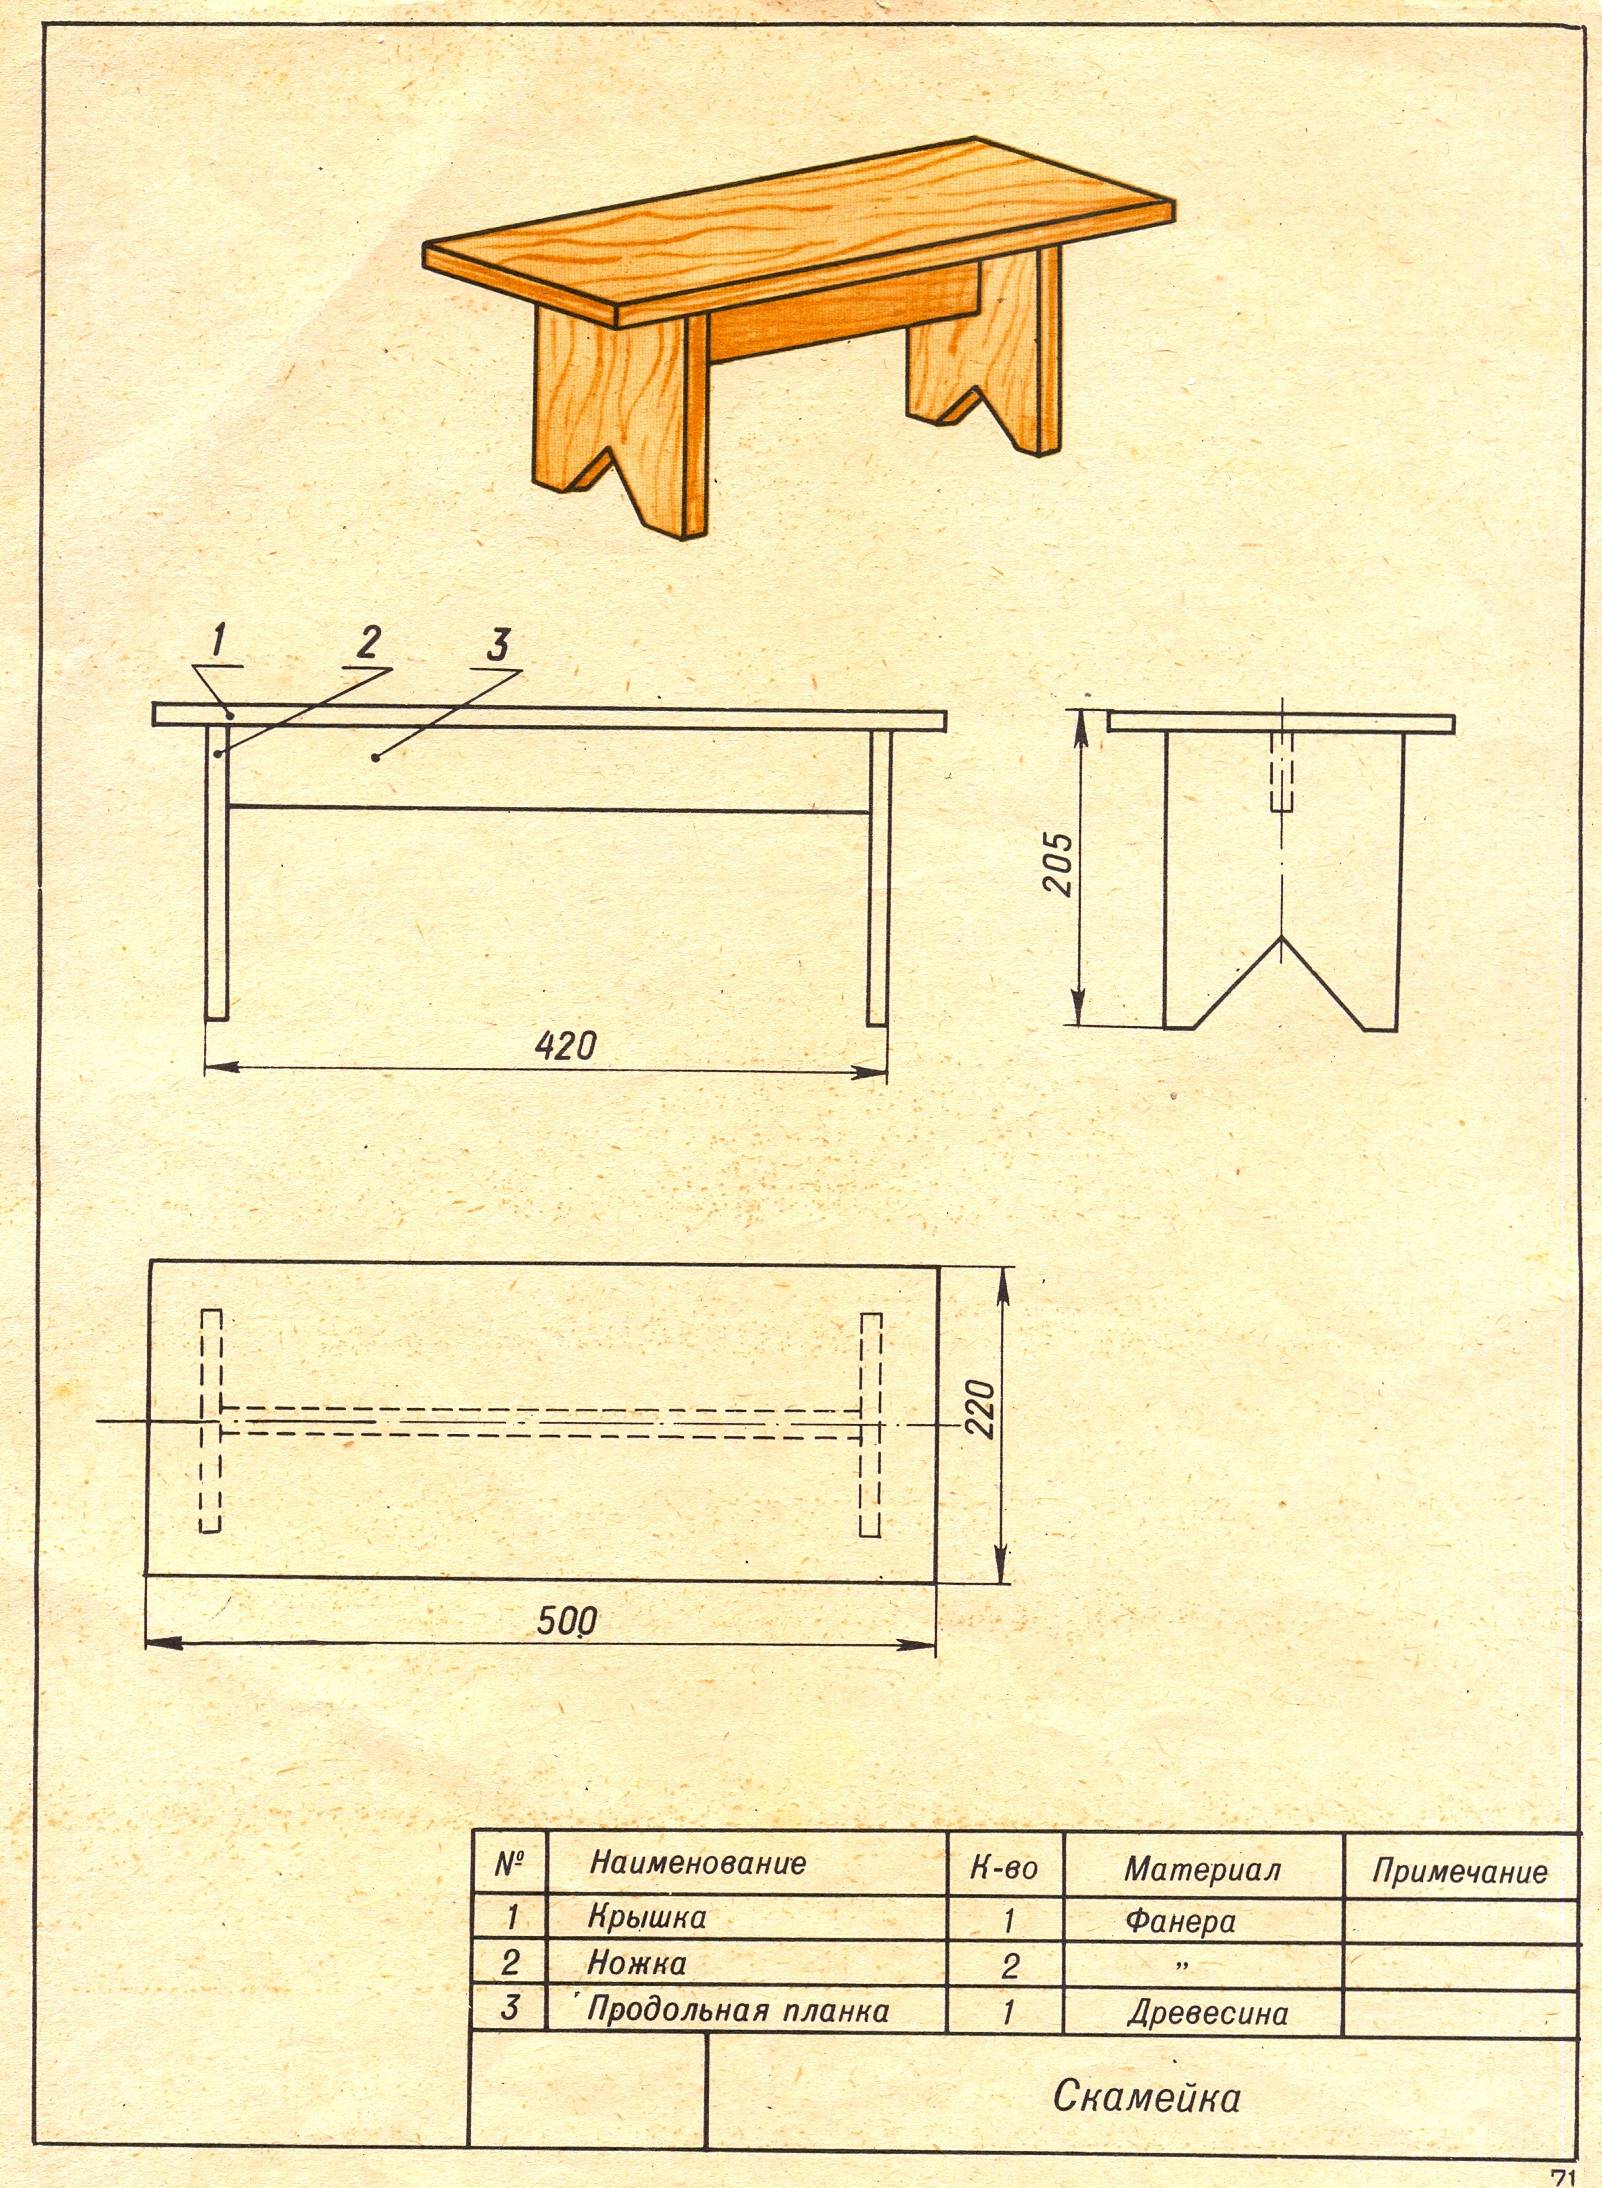 Симпатичная скамейка своими руками + пошаговая инструкция, чертежи и фото